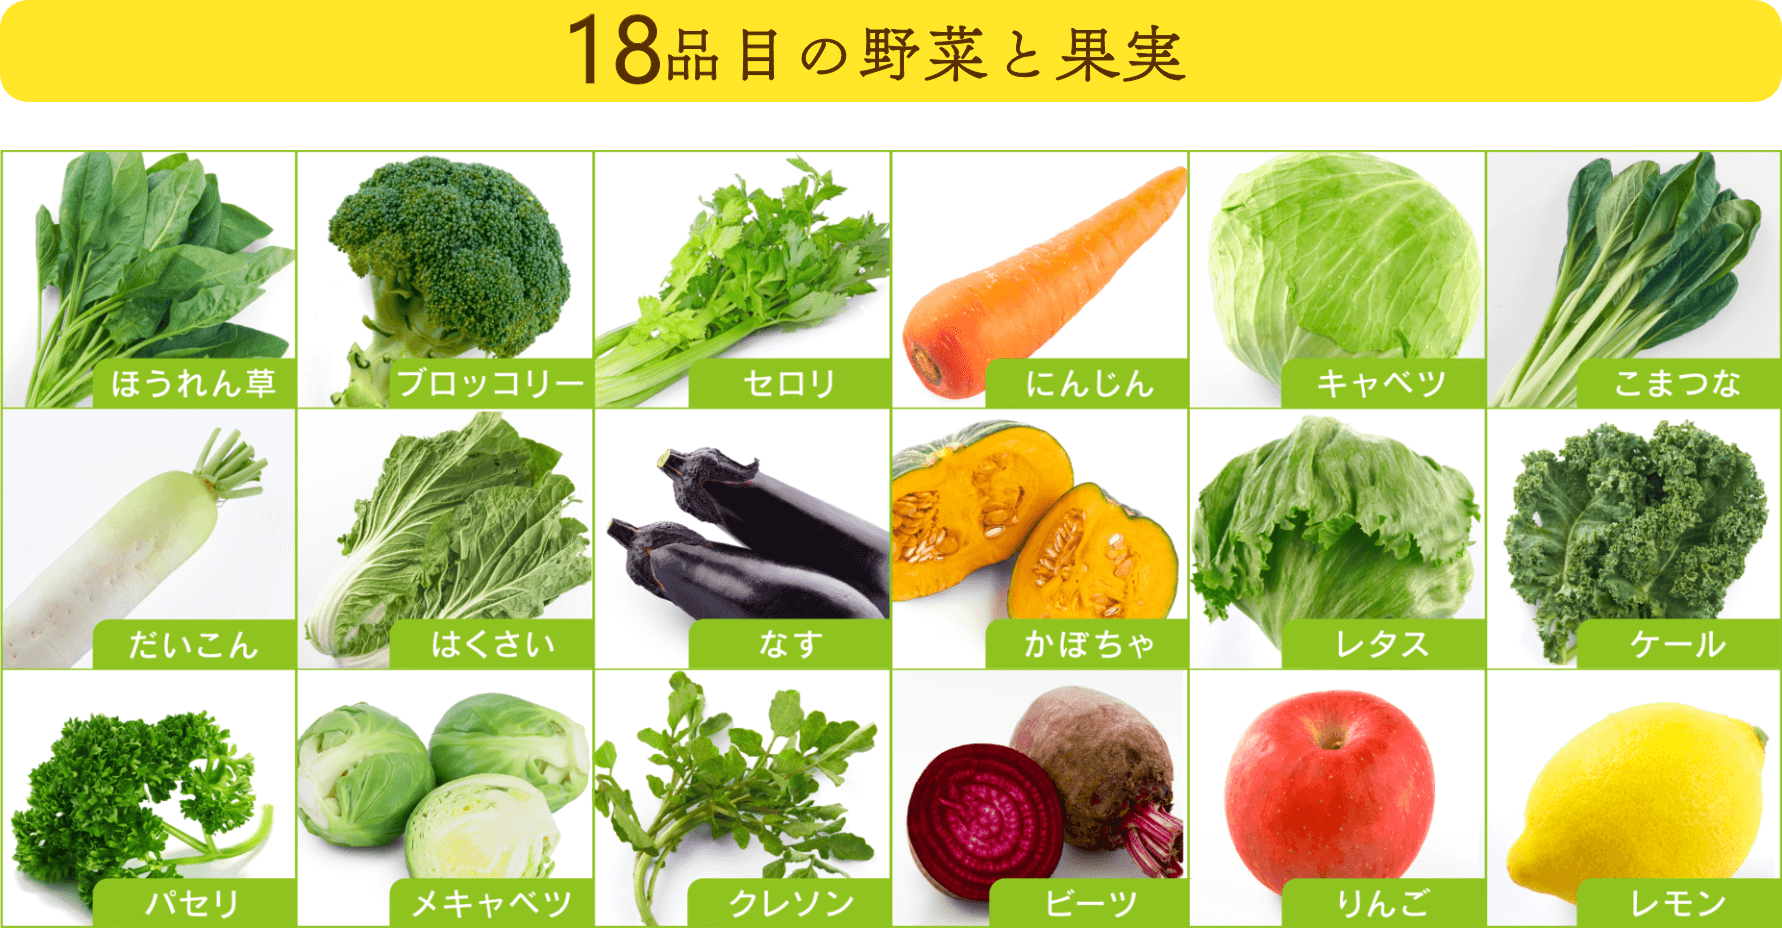 18品目の野菜と果実